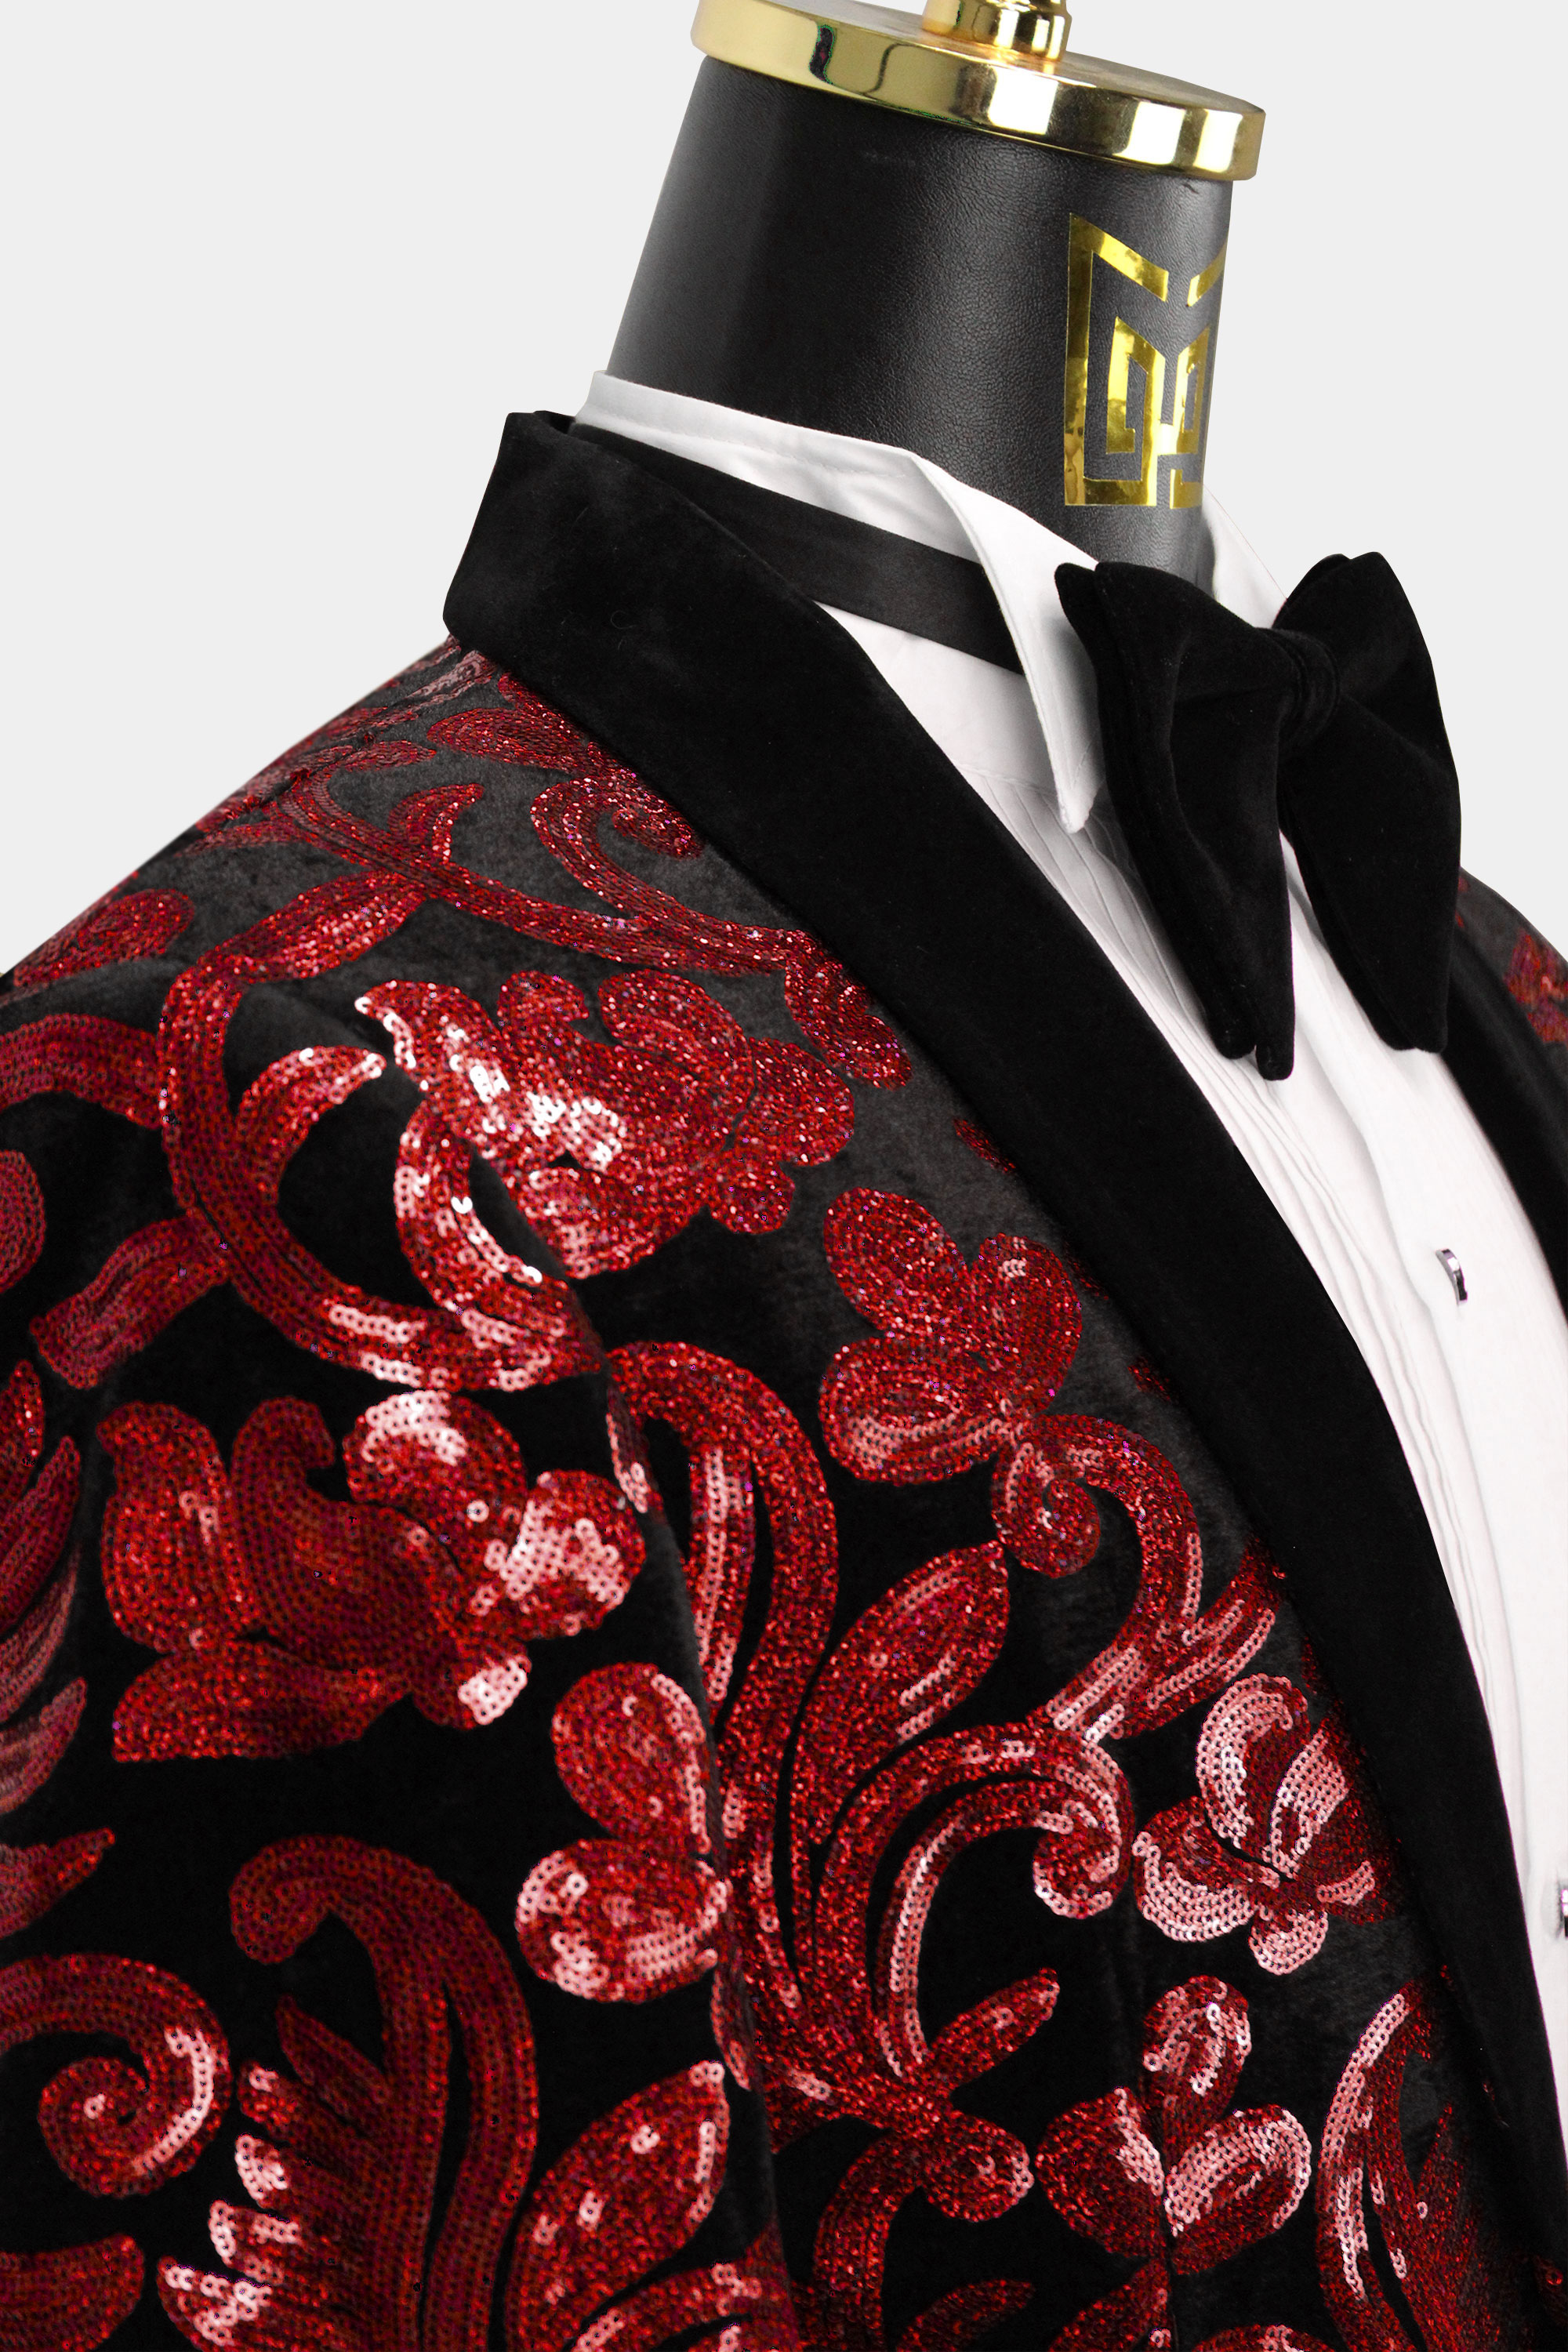 Mens-Red-and-Black-Groom-Wedding-Tuxedo-Jacket-Blazer-from-Gentlemansguru.com